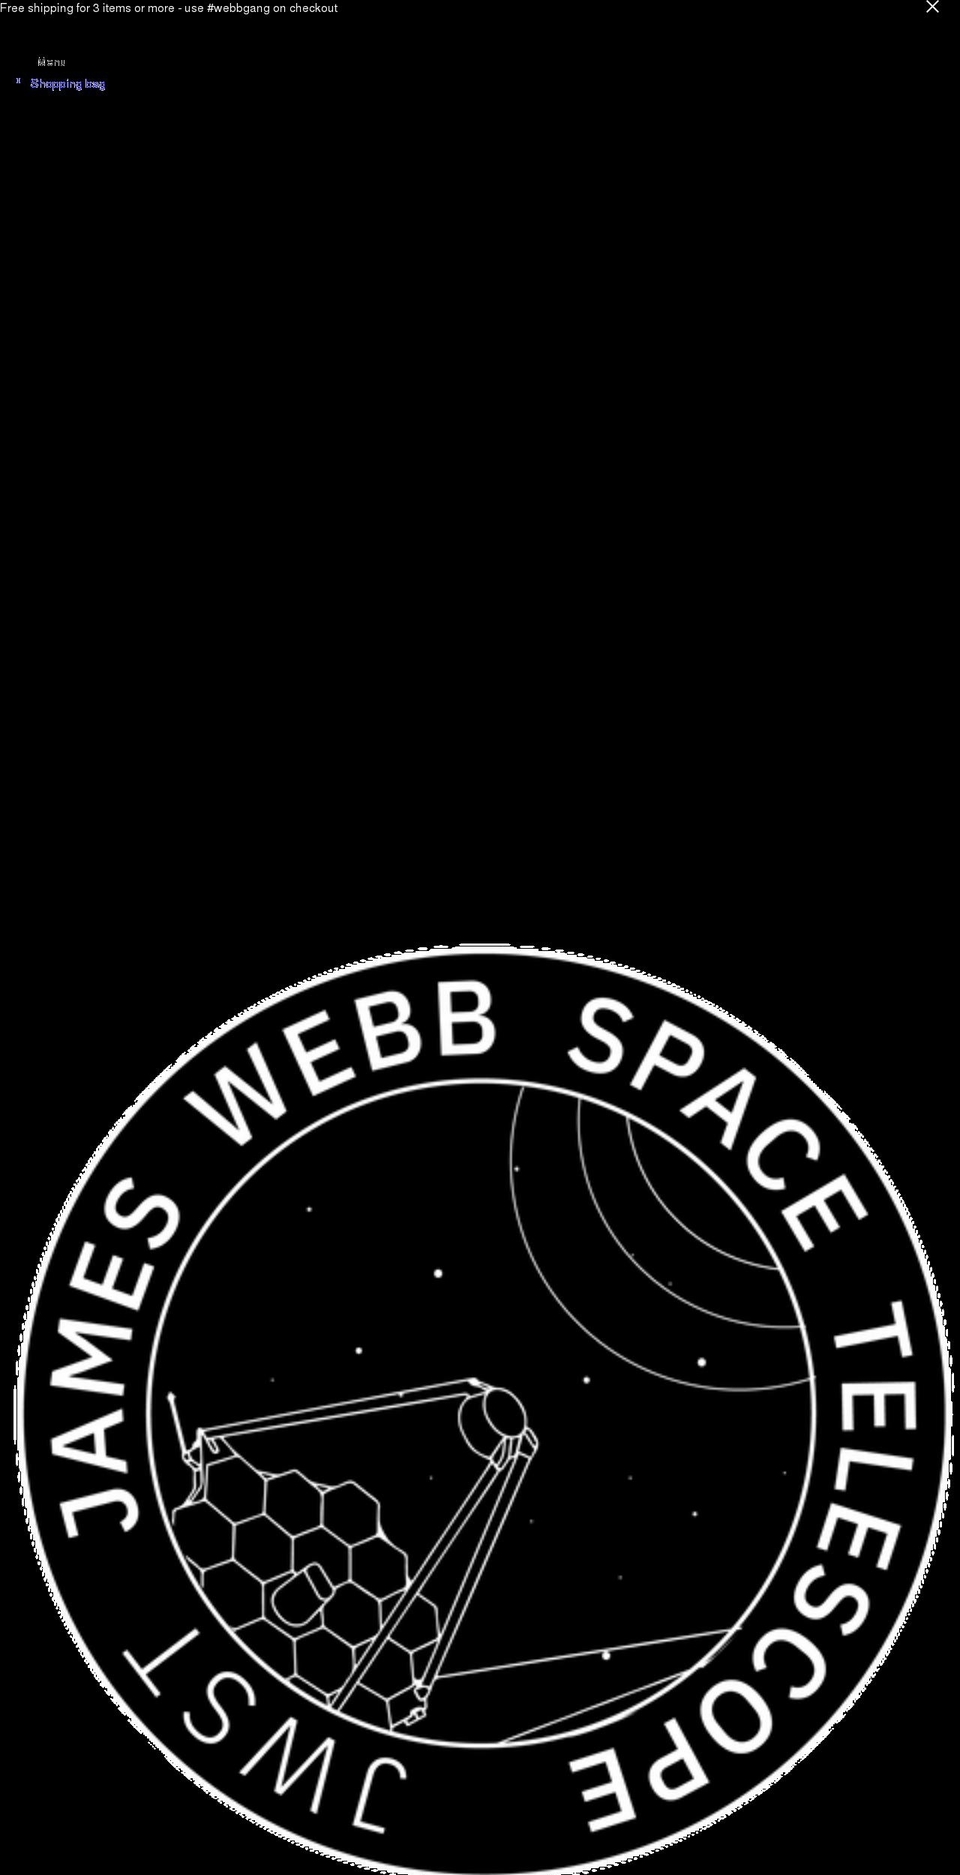 james-webb-space-telescope.com shopify website screenshot